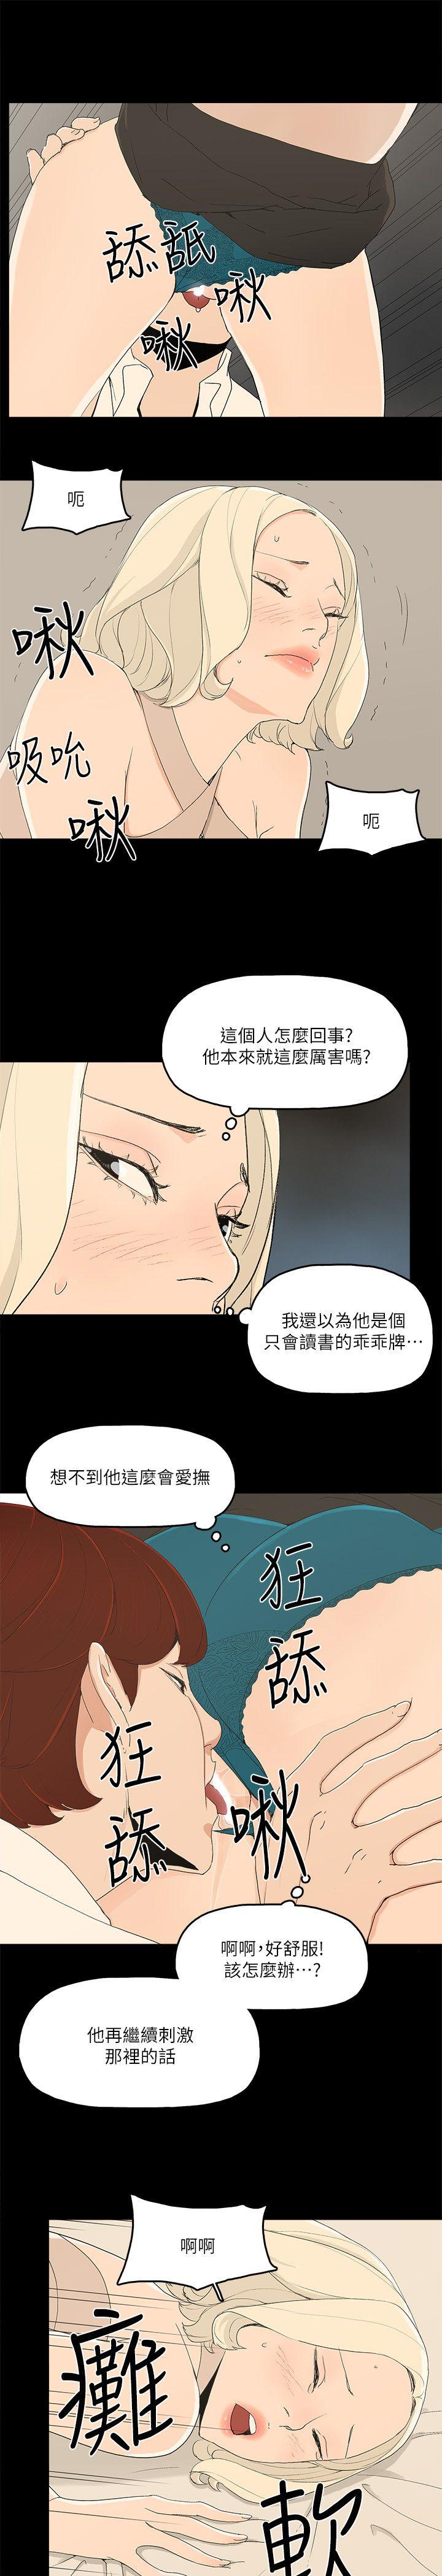 韩国污漫画 金錢與女人 第13话-浑身发烫 12